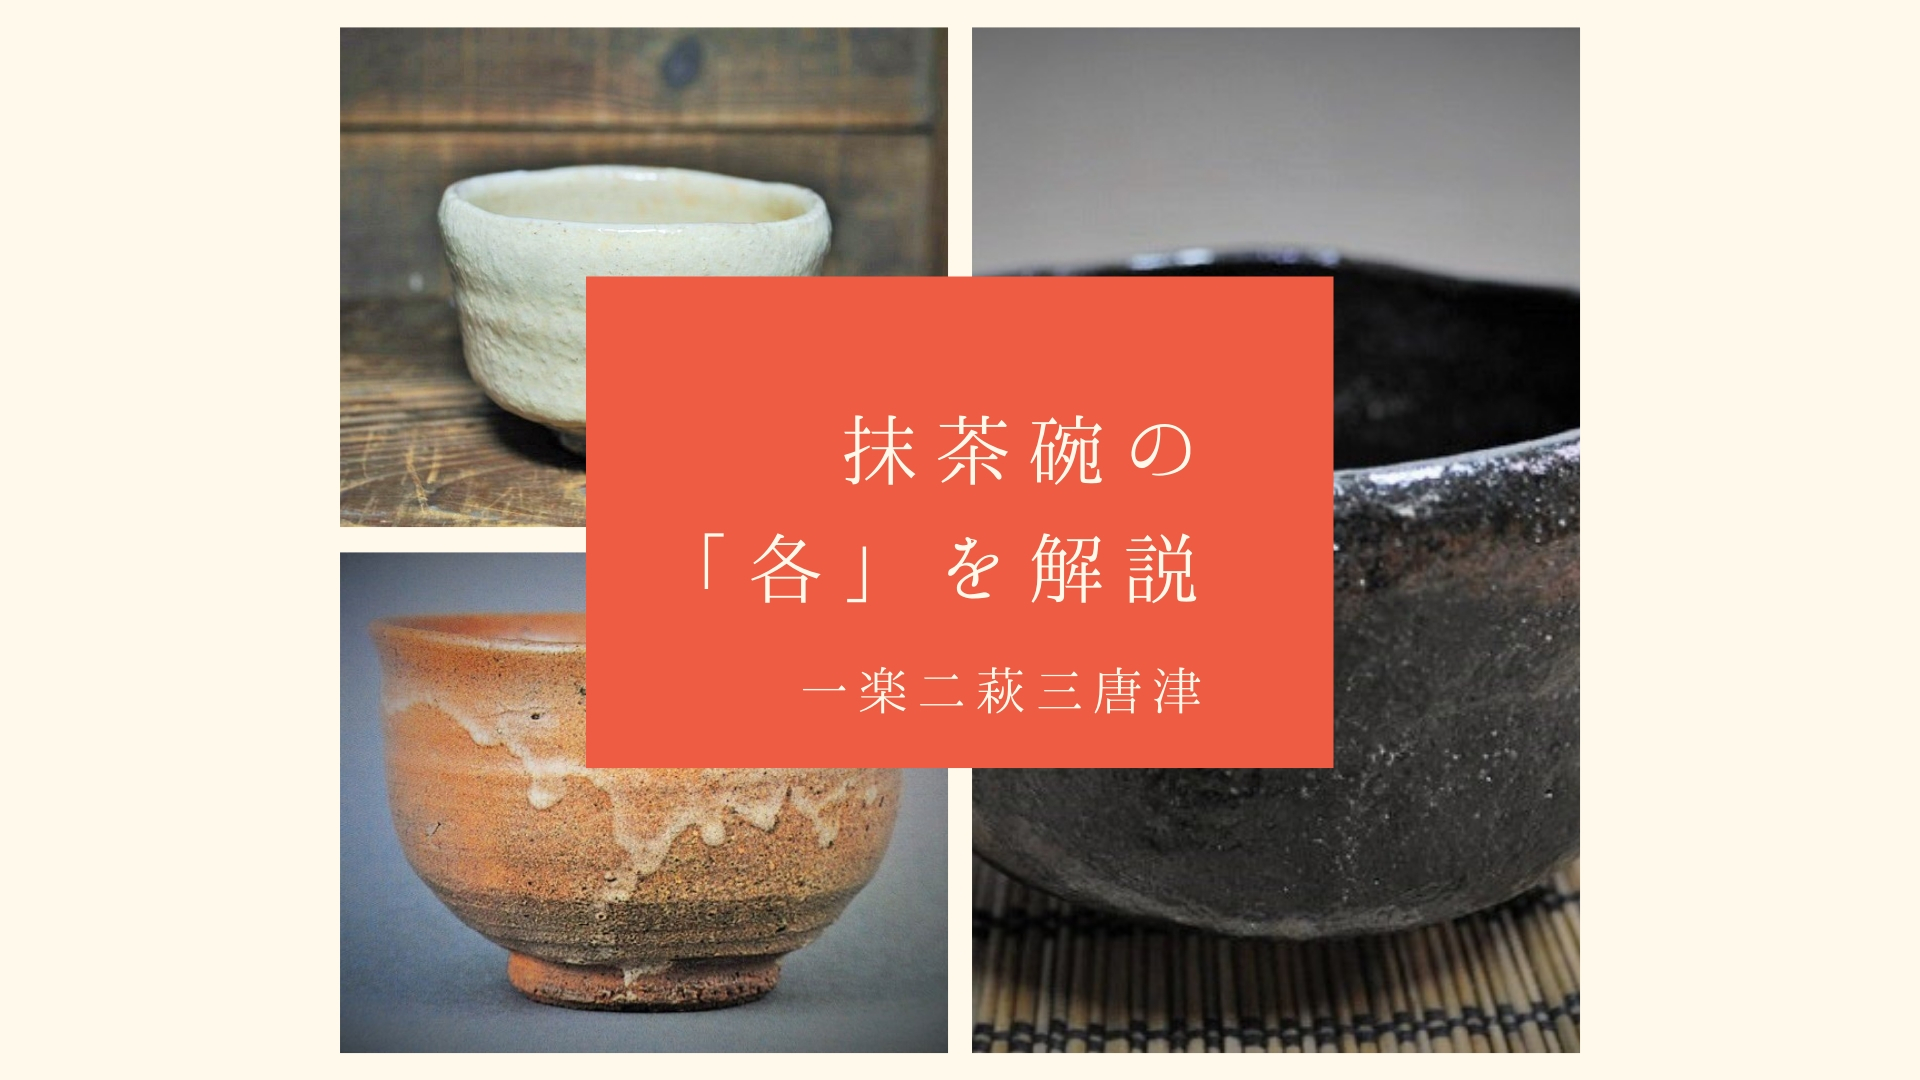 抹茶碗の色や格の取り合わせやバランスを茶道初心者に京都の陶芸家が解説